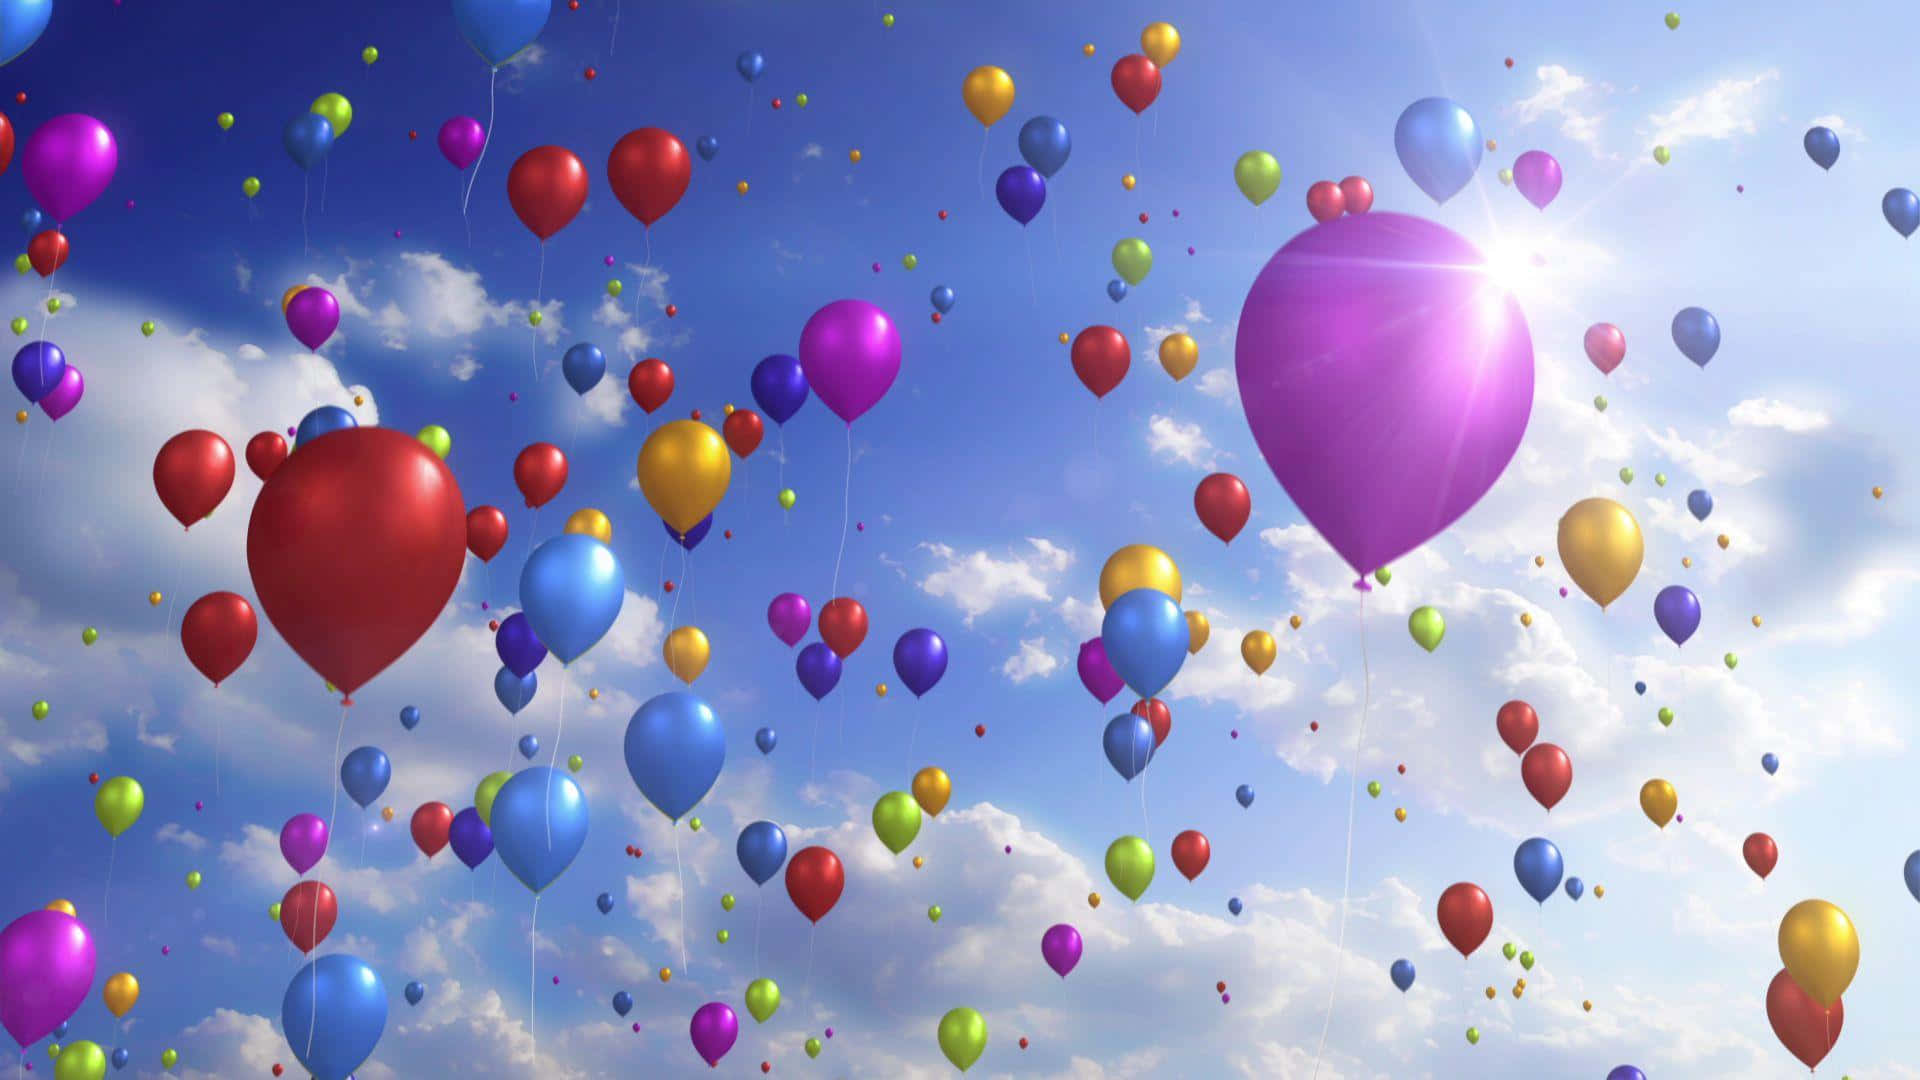 Vintageheißluftballons Fliegen In Einem Blauen Himmel.